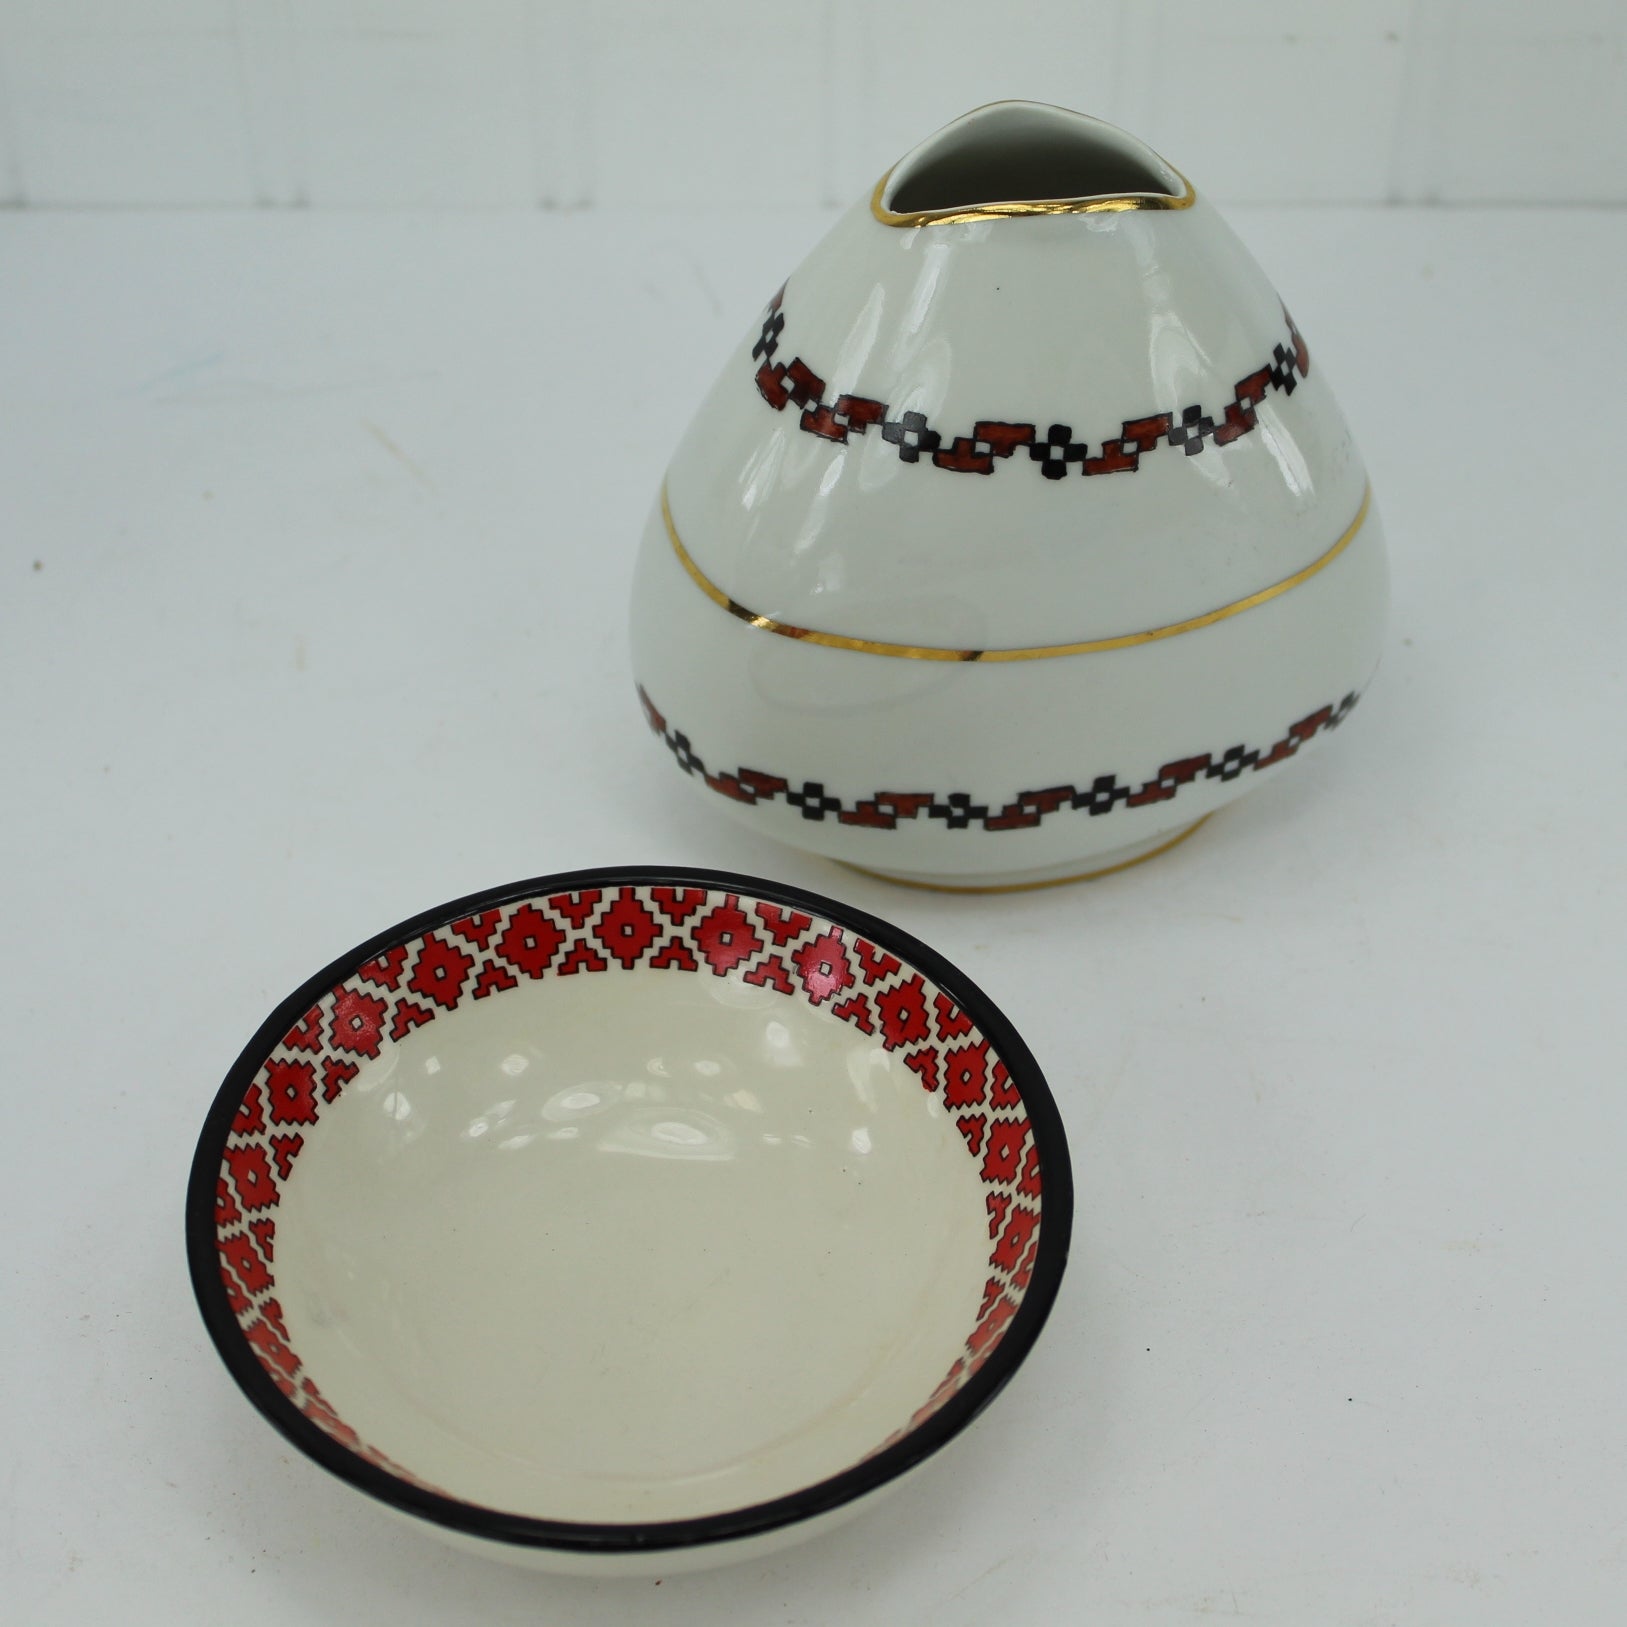 Traditional Pottery Bowl & Porcelain Unusual Porcelain Vase Brazil Estate Opera Singer